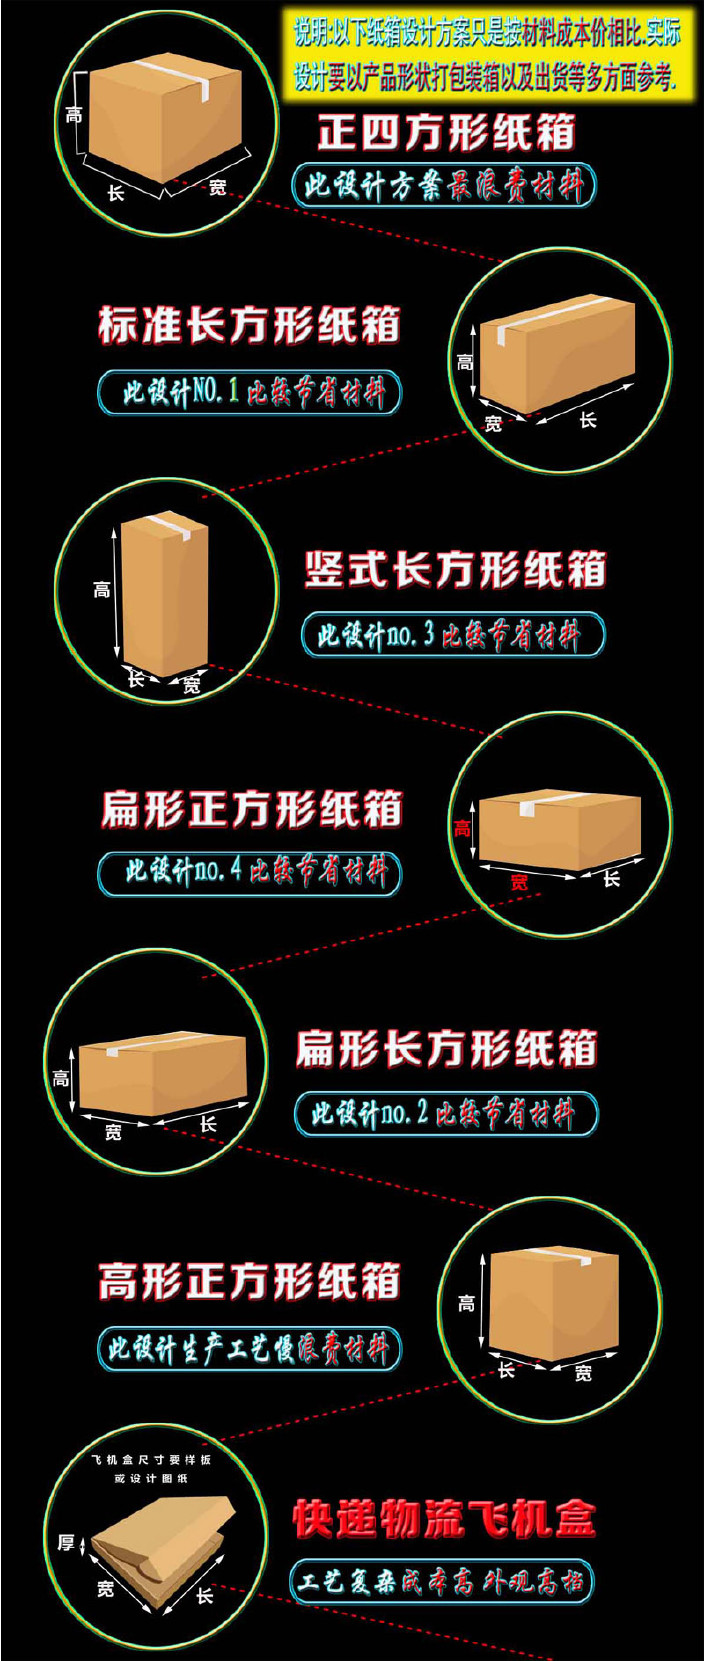 现货纸箱纸盒,优质电商快递纸箱 厂家直销 3层空白,中性印刷 加硬示例图6